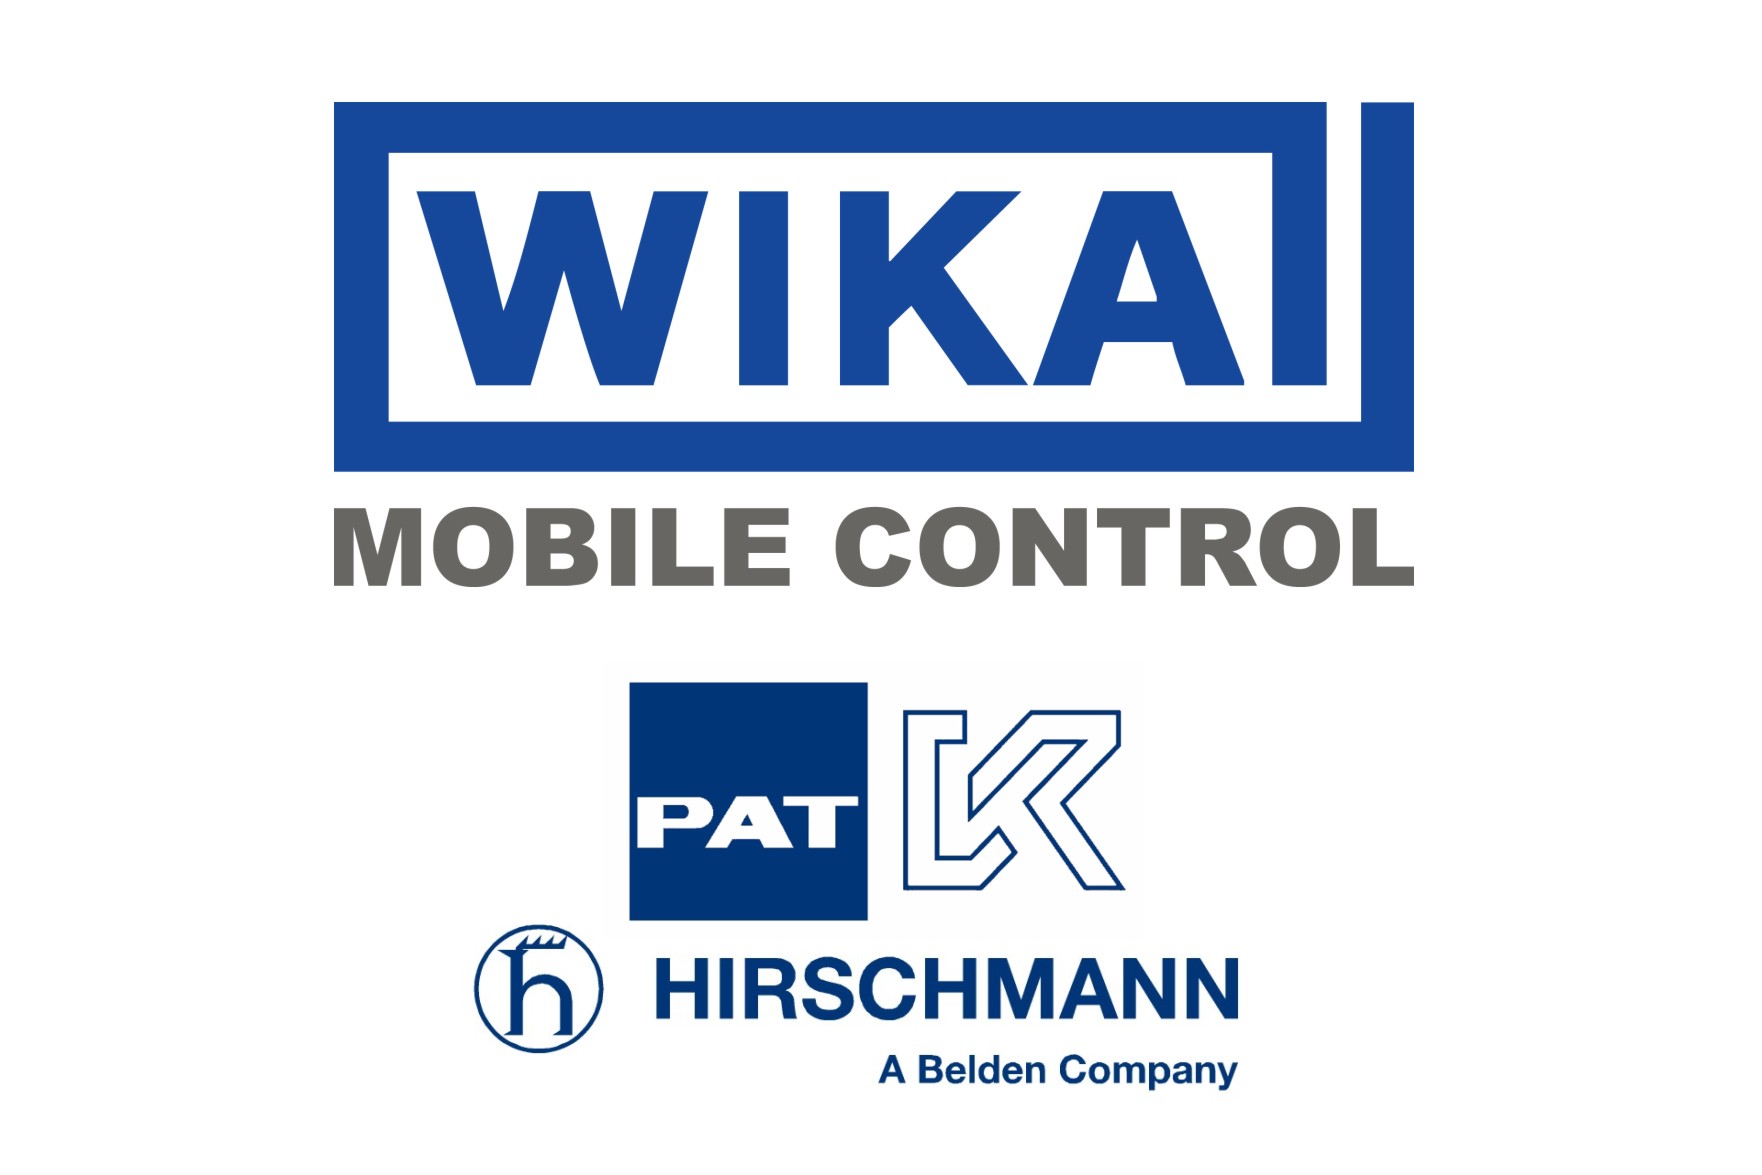 Wika-PAT-Hirschmann-Manuals